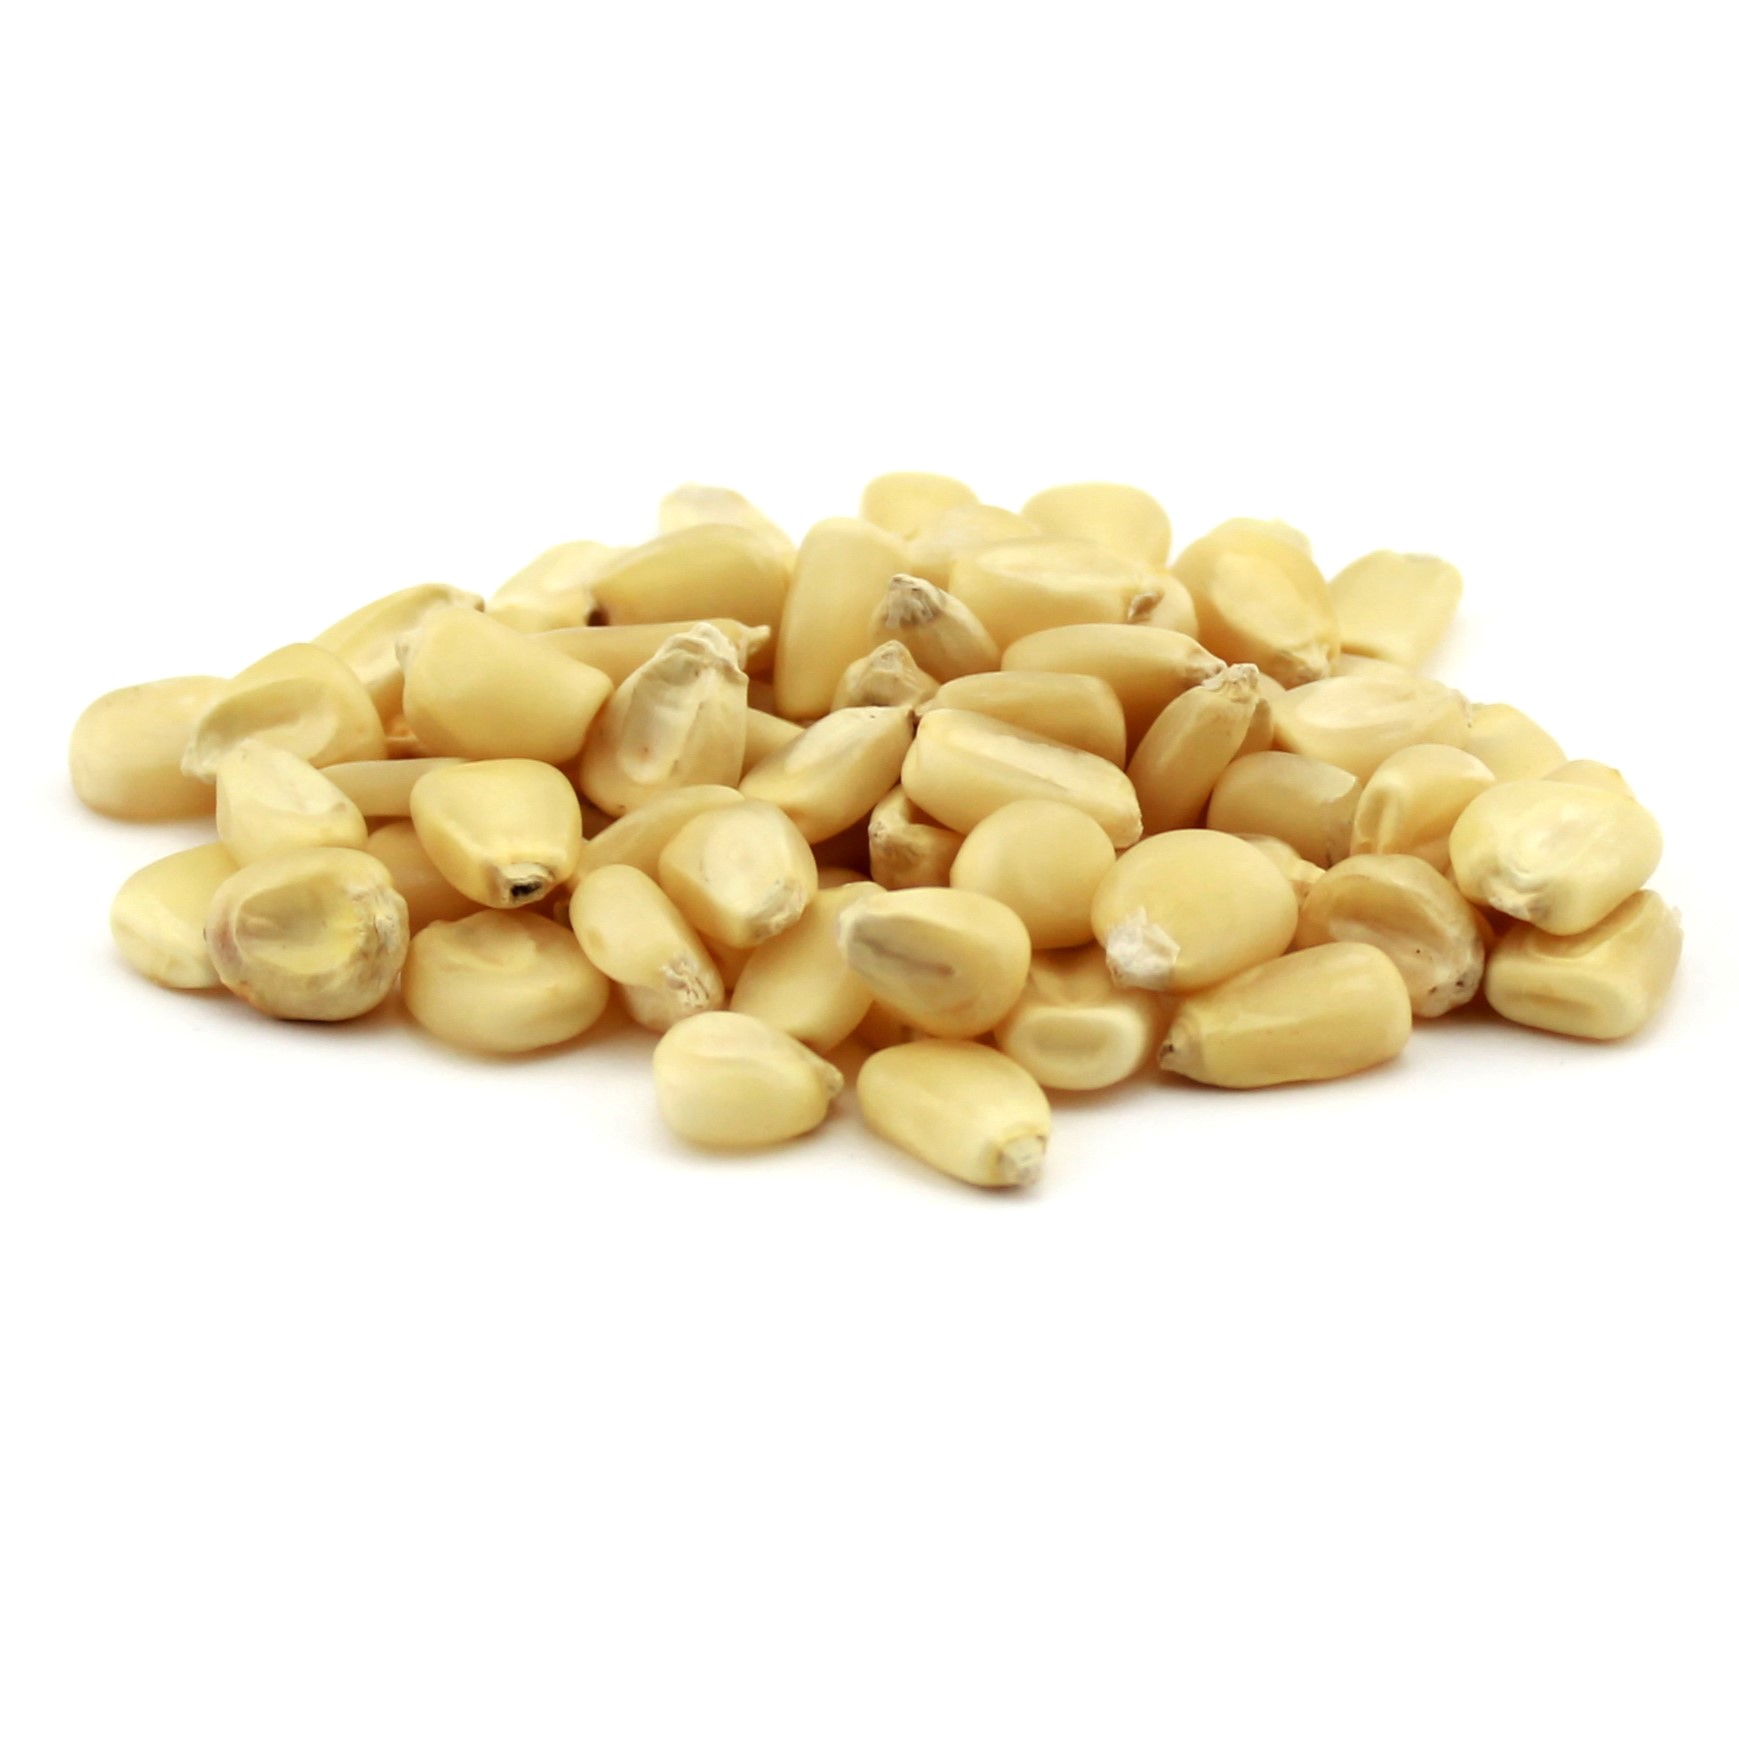 Moseby’s Prolific White Corn Grain – 50 LB Bag